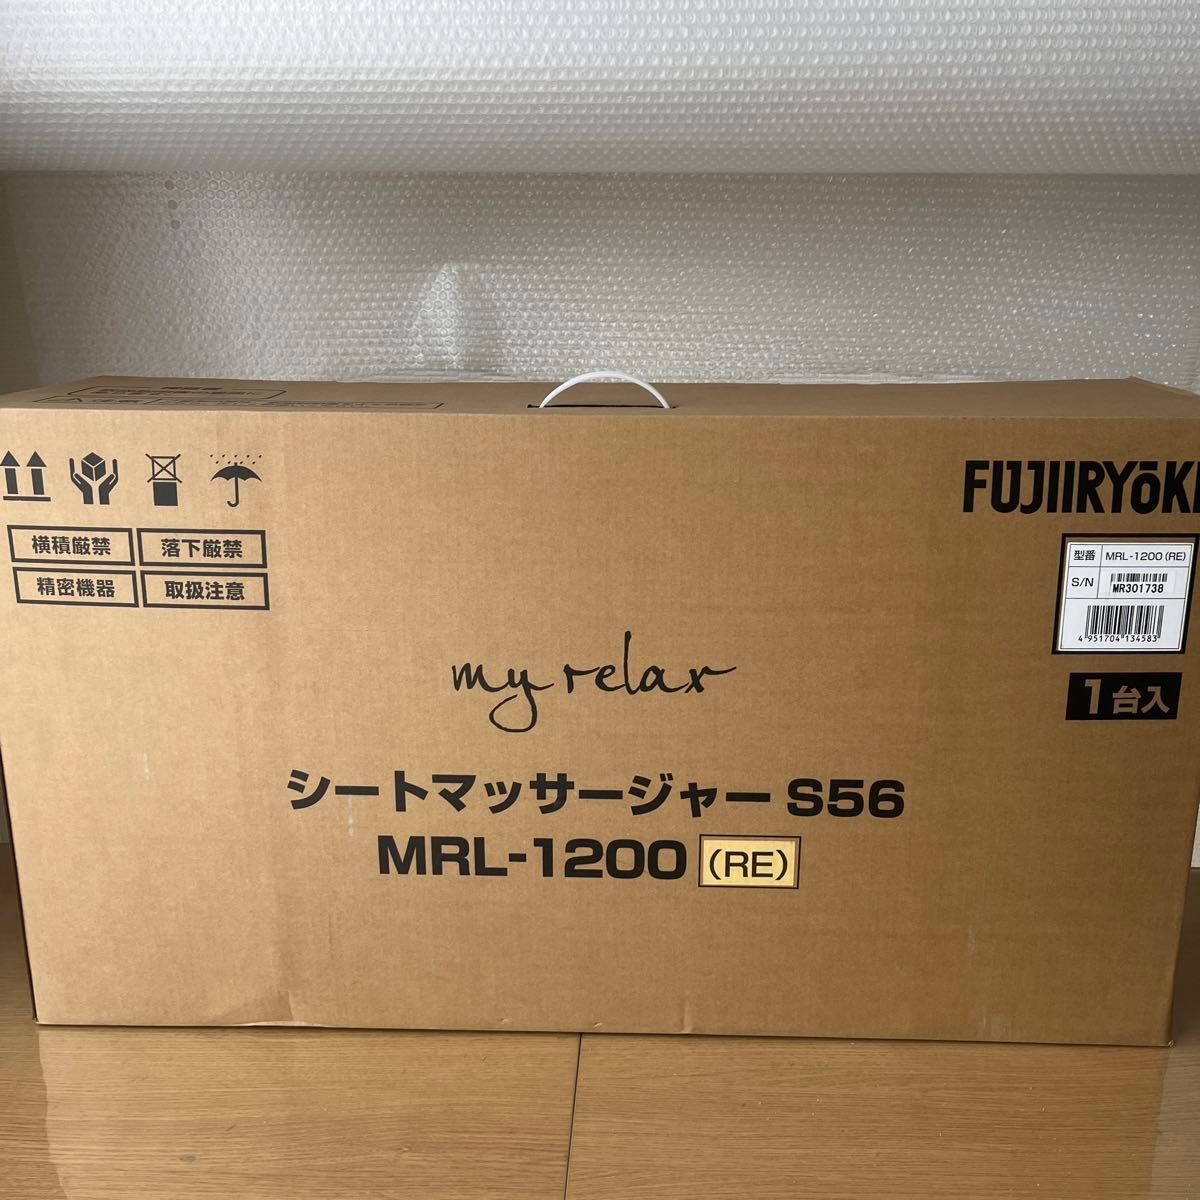 【新品】マイリラ シートマッサージャー S56 MRL-1200 RE（レッド）